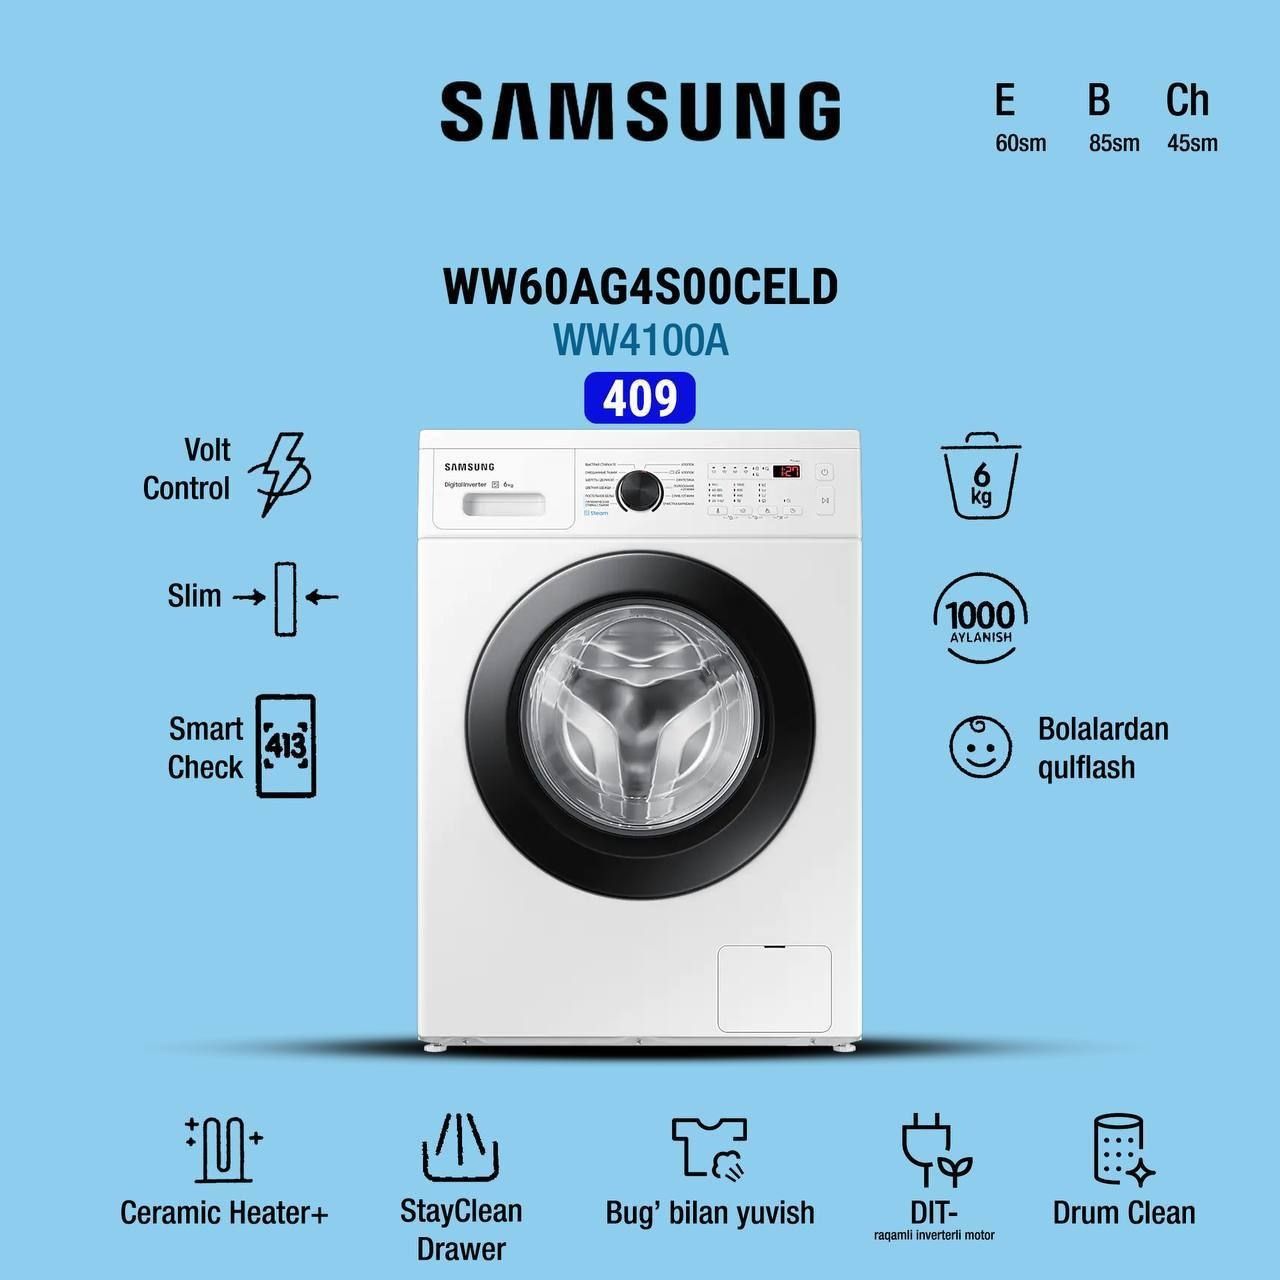 Samsung стиральные машины